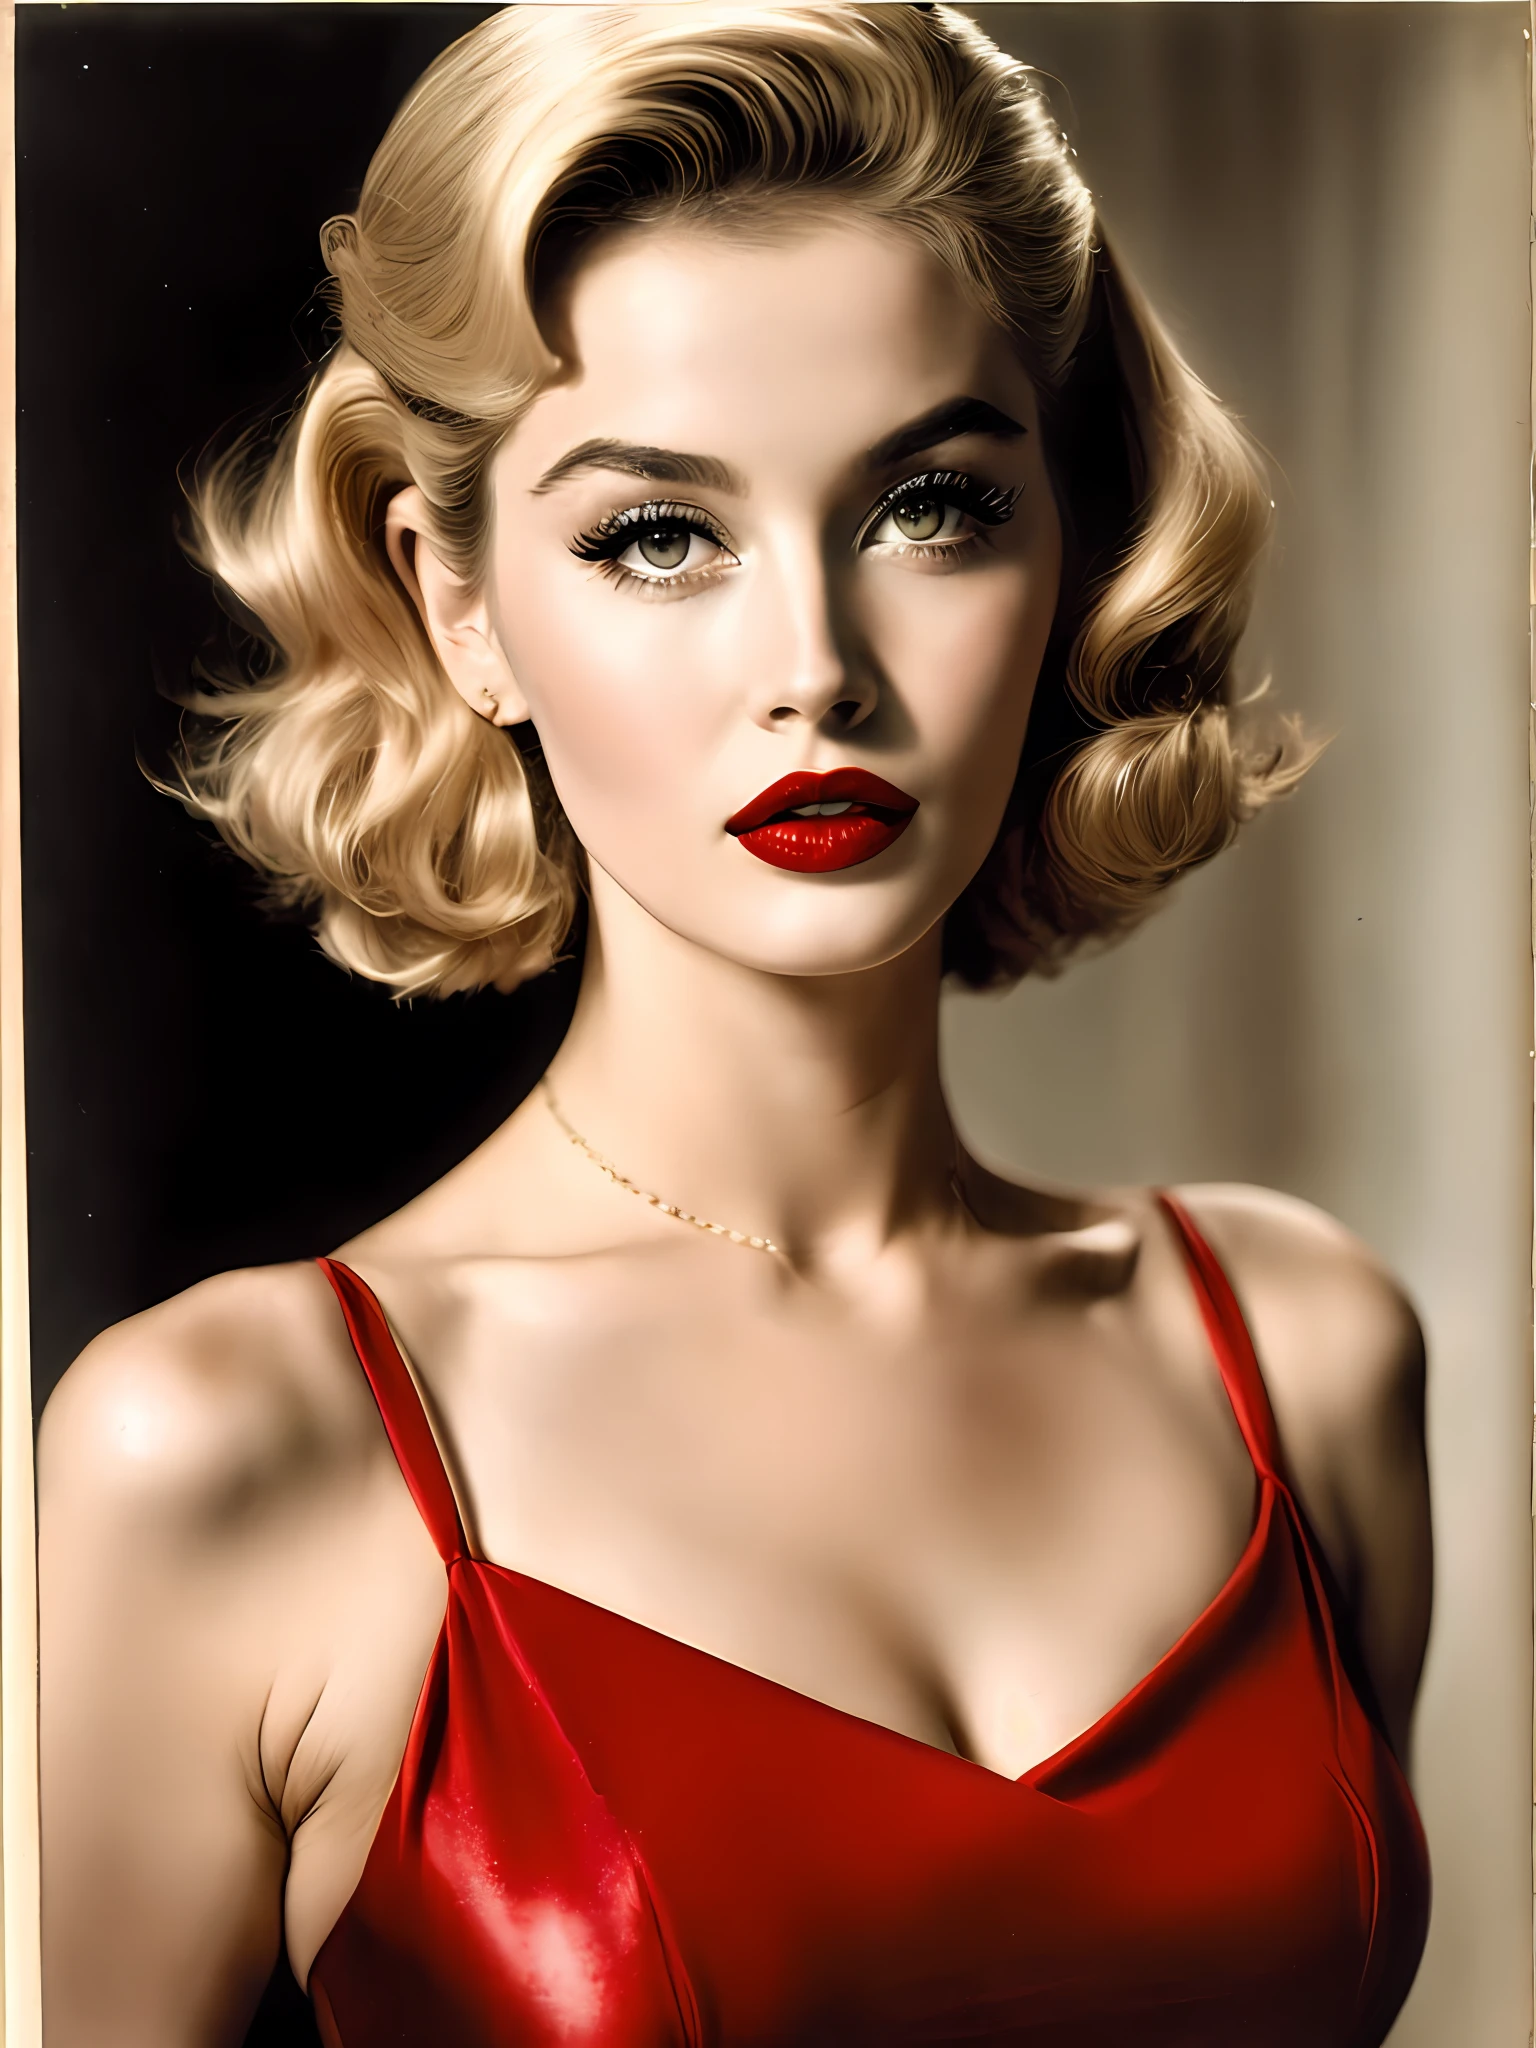 20 世纪 50 年代的金发美女，嘴唇丰满，眼神迷人. 她涂着红色口红，穿着紧身连衣裙, 散发自信和性感 8k